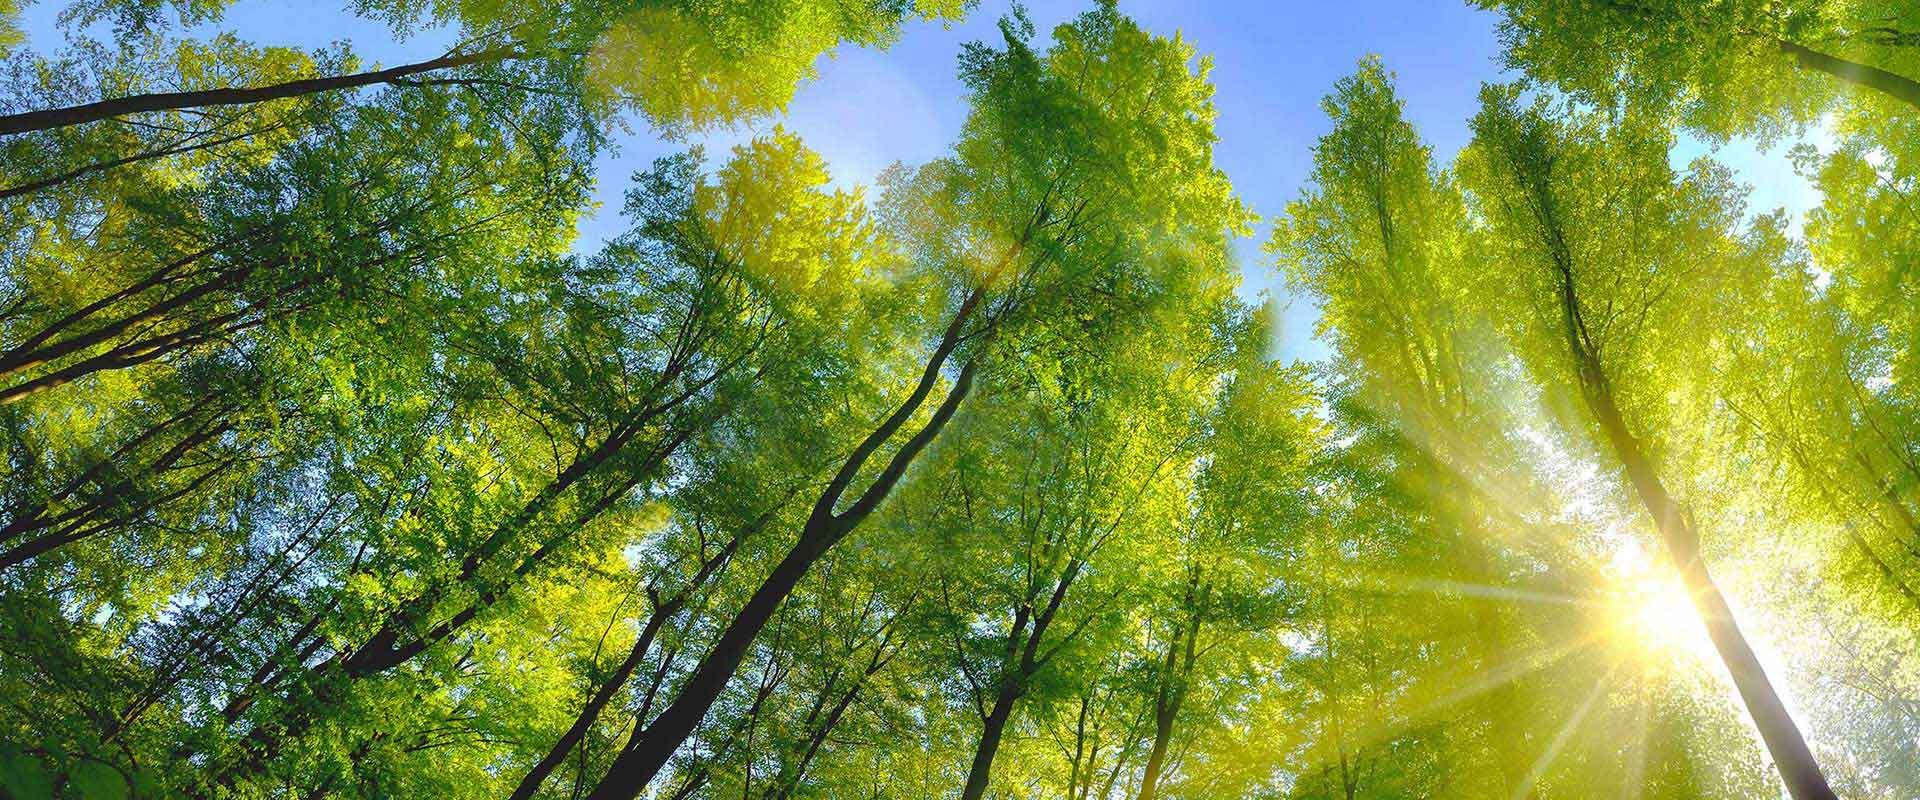 Von Sonnenlicht durchfluteter Laubwald mit saftig grünen Blättern und blauem Himmel